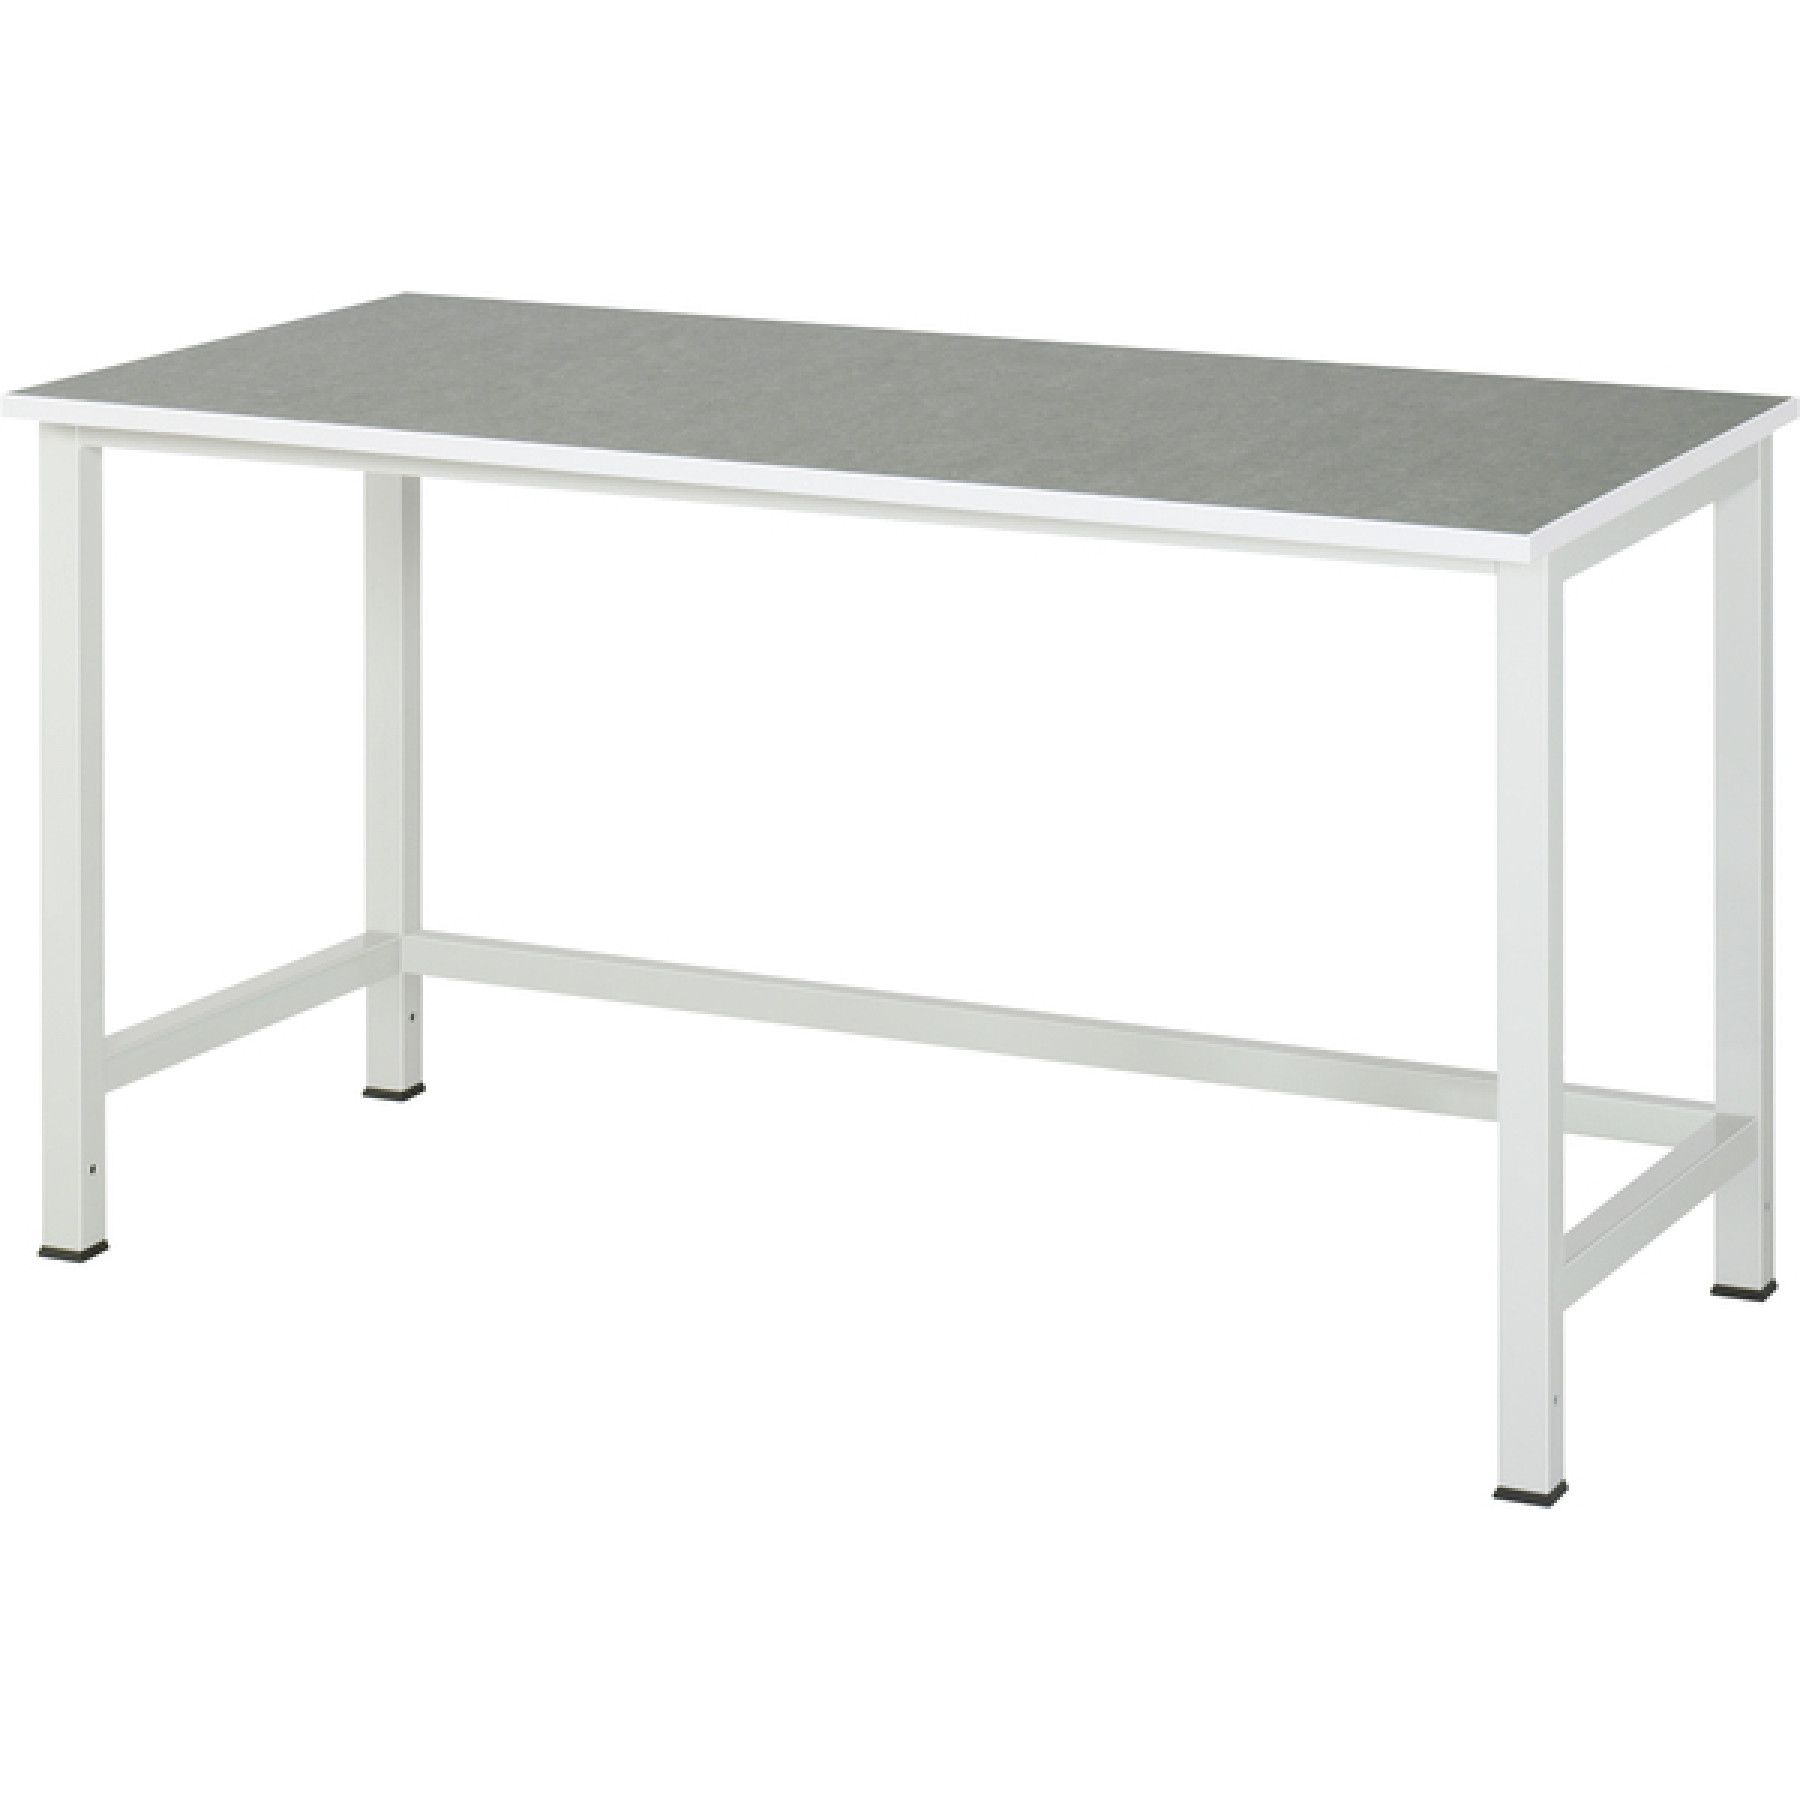 Werktafel met werkblad met linoleum toplaag, serie 900